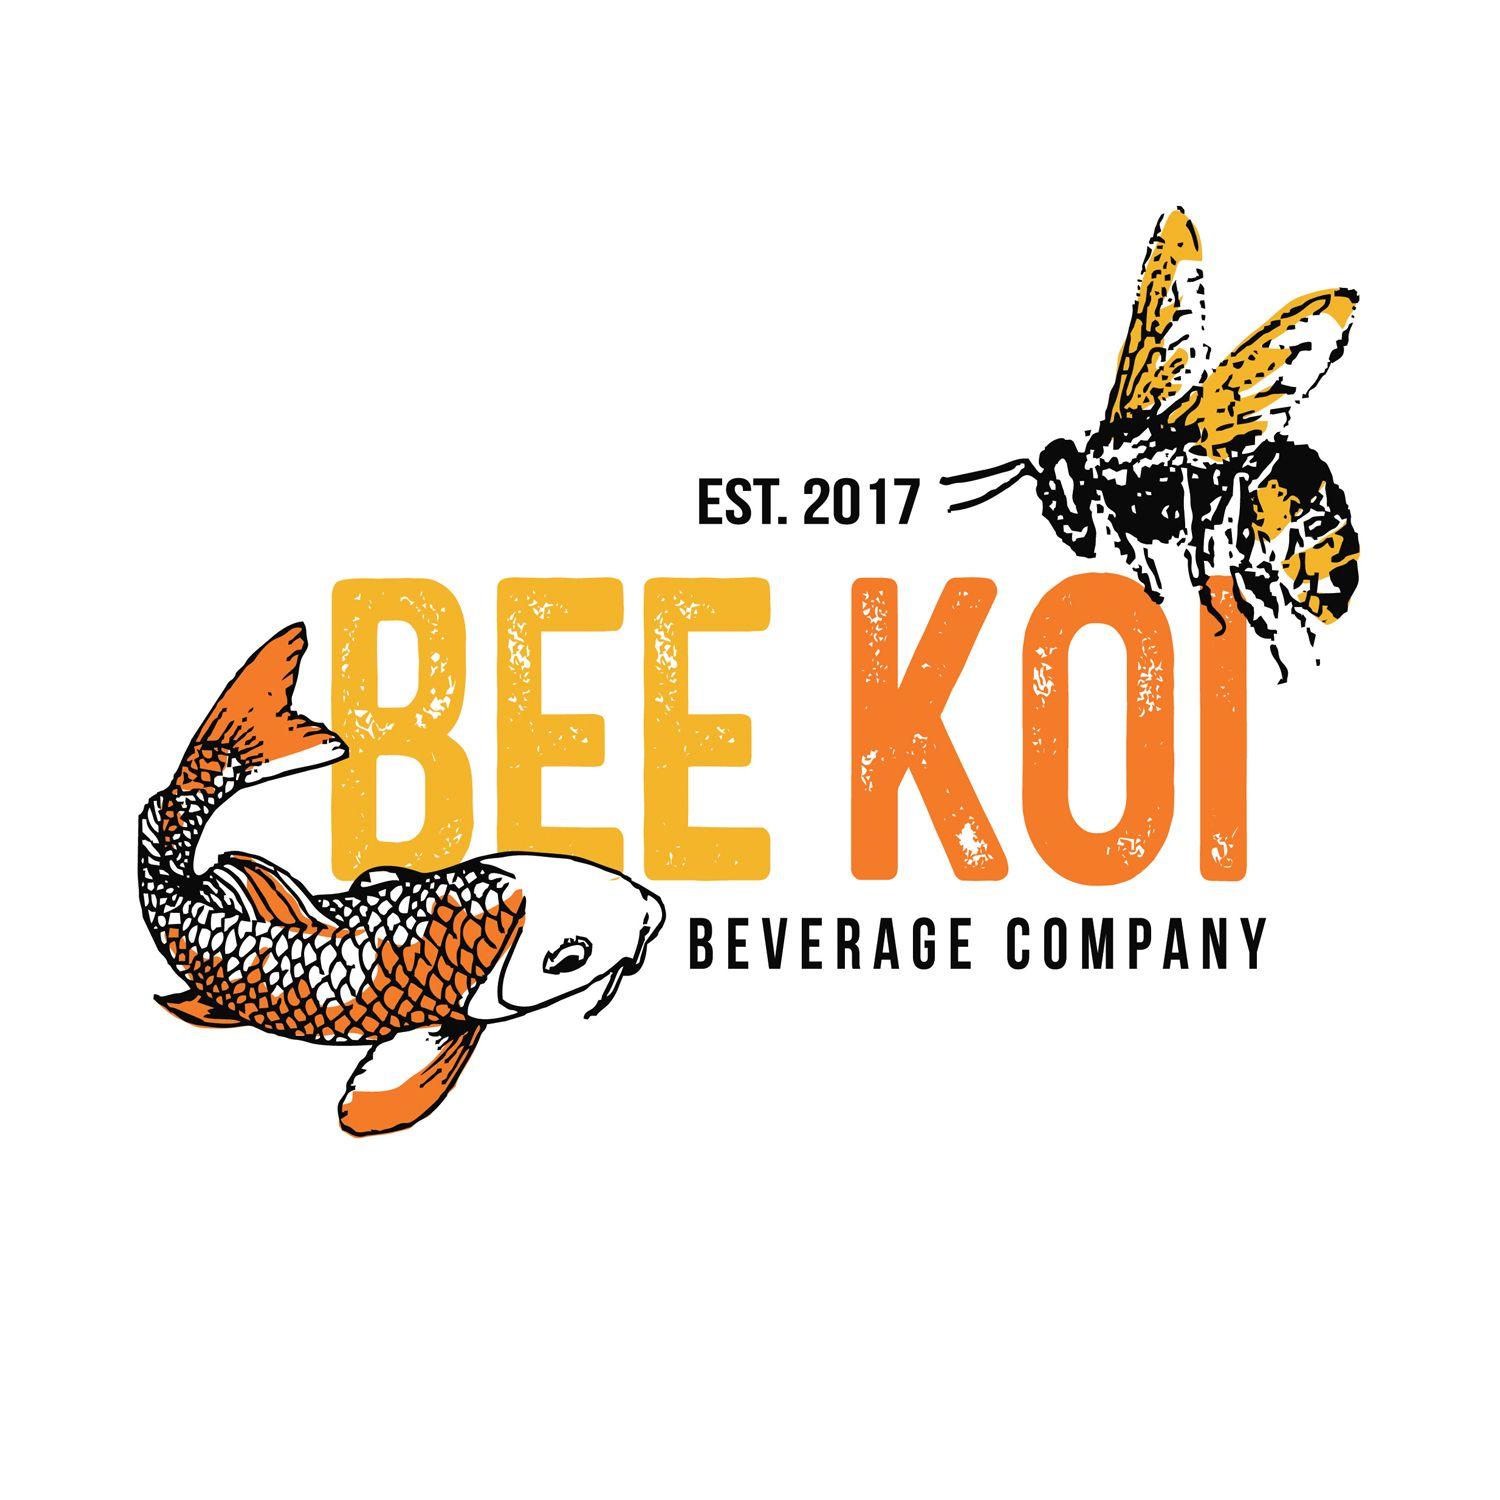 Beverage Manufacturer Logo - Upmarket, Bold, It Company Logo Design for Bee Koi Beverage Company